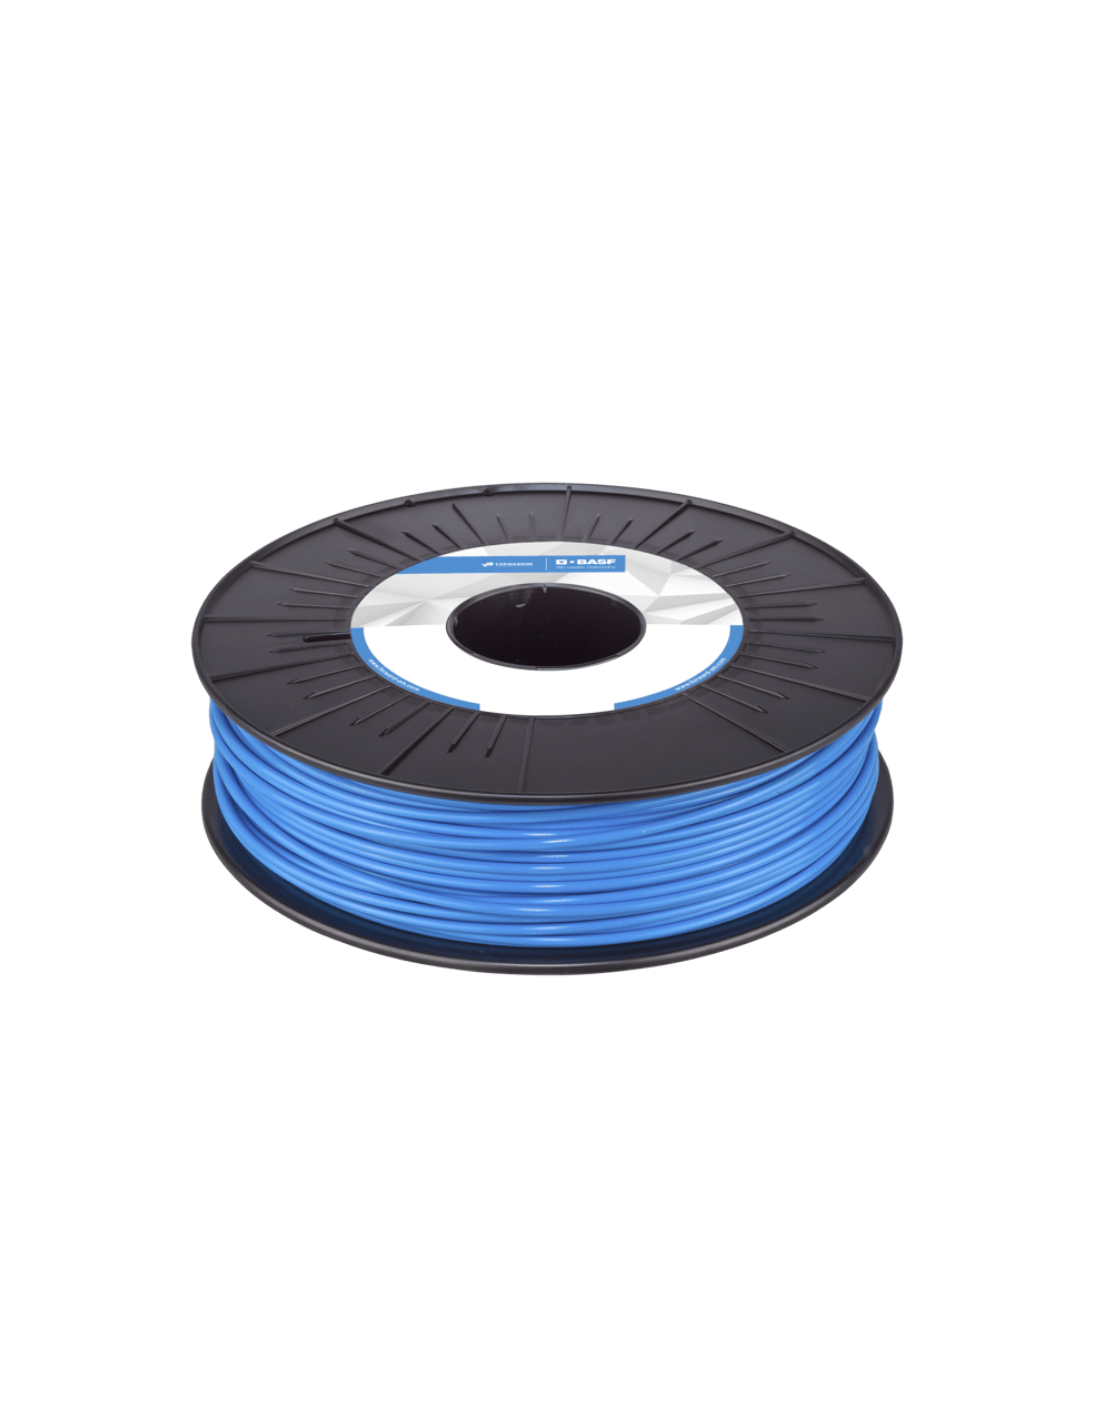 BASF Ultrafuse PLA | Filamento para impresión 3D | 1,75 mm (0,75Kg) | Azul claro